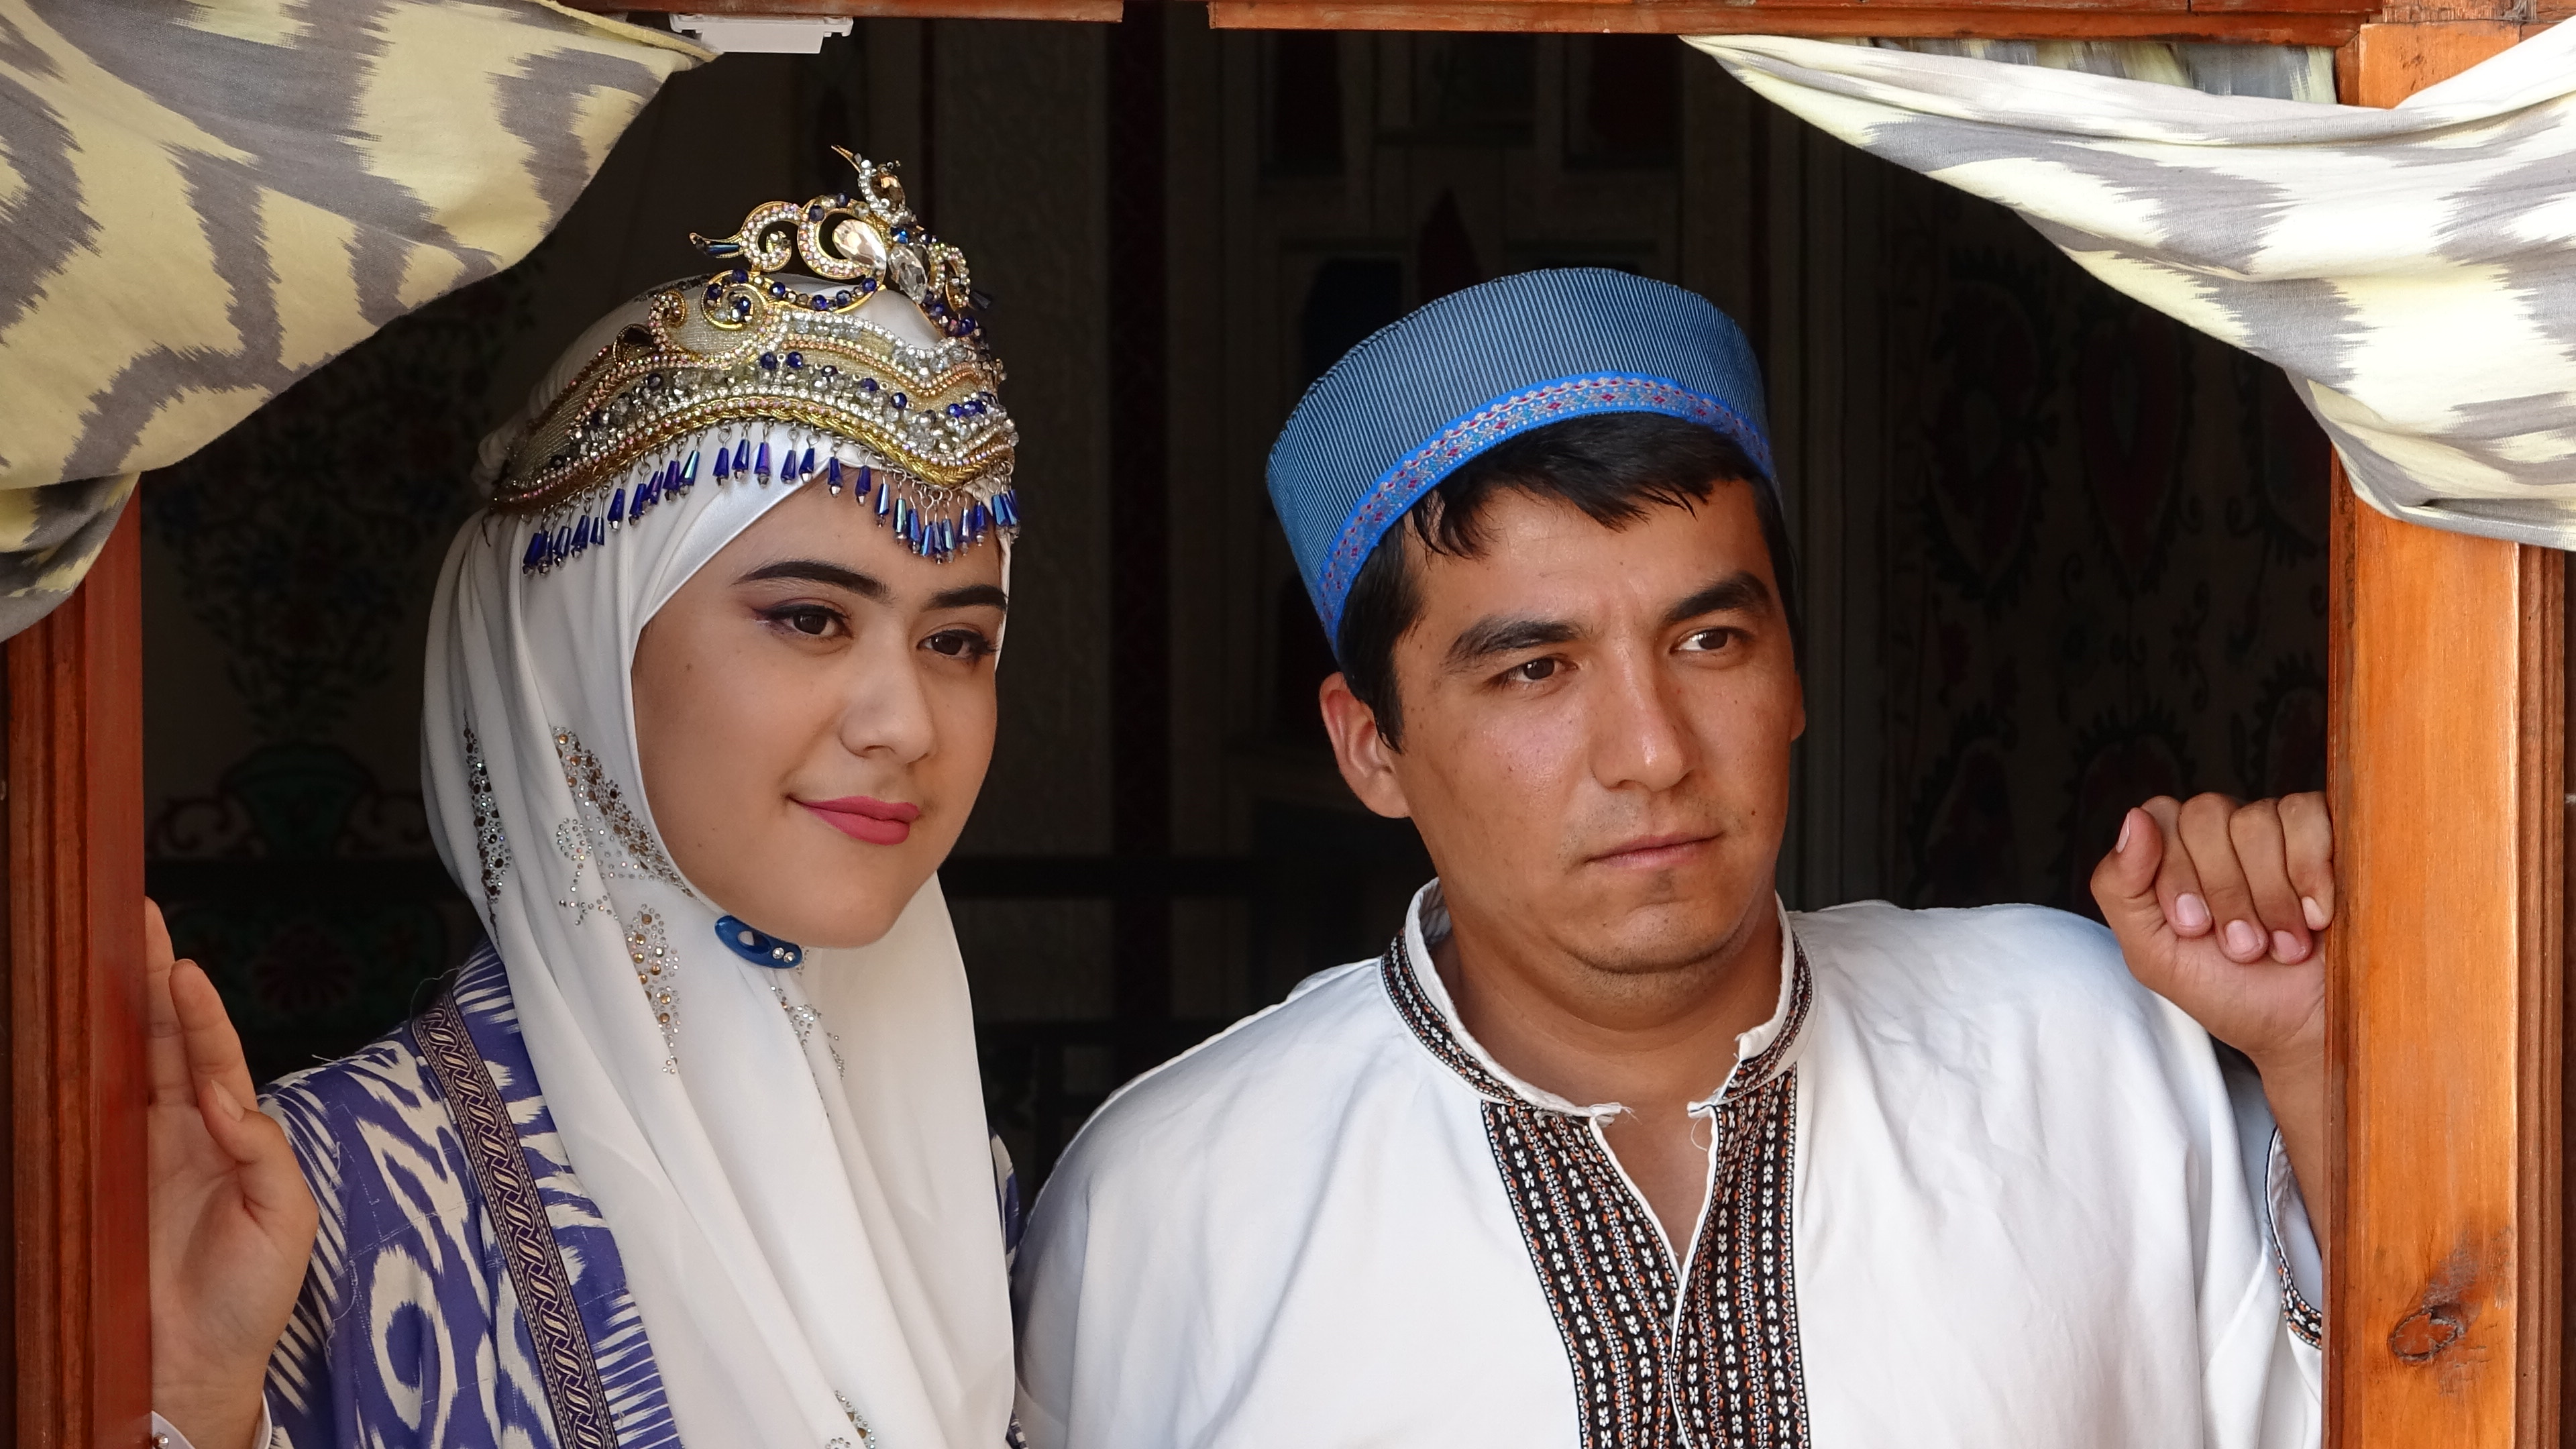 Uzbekistan